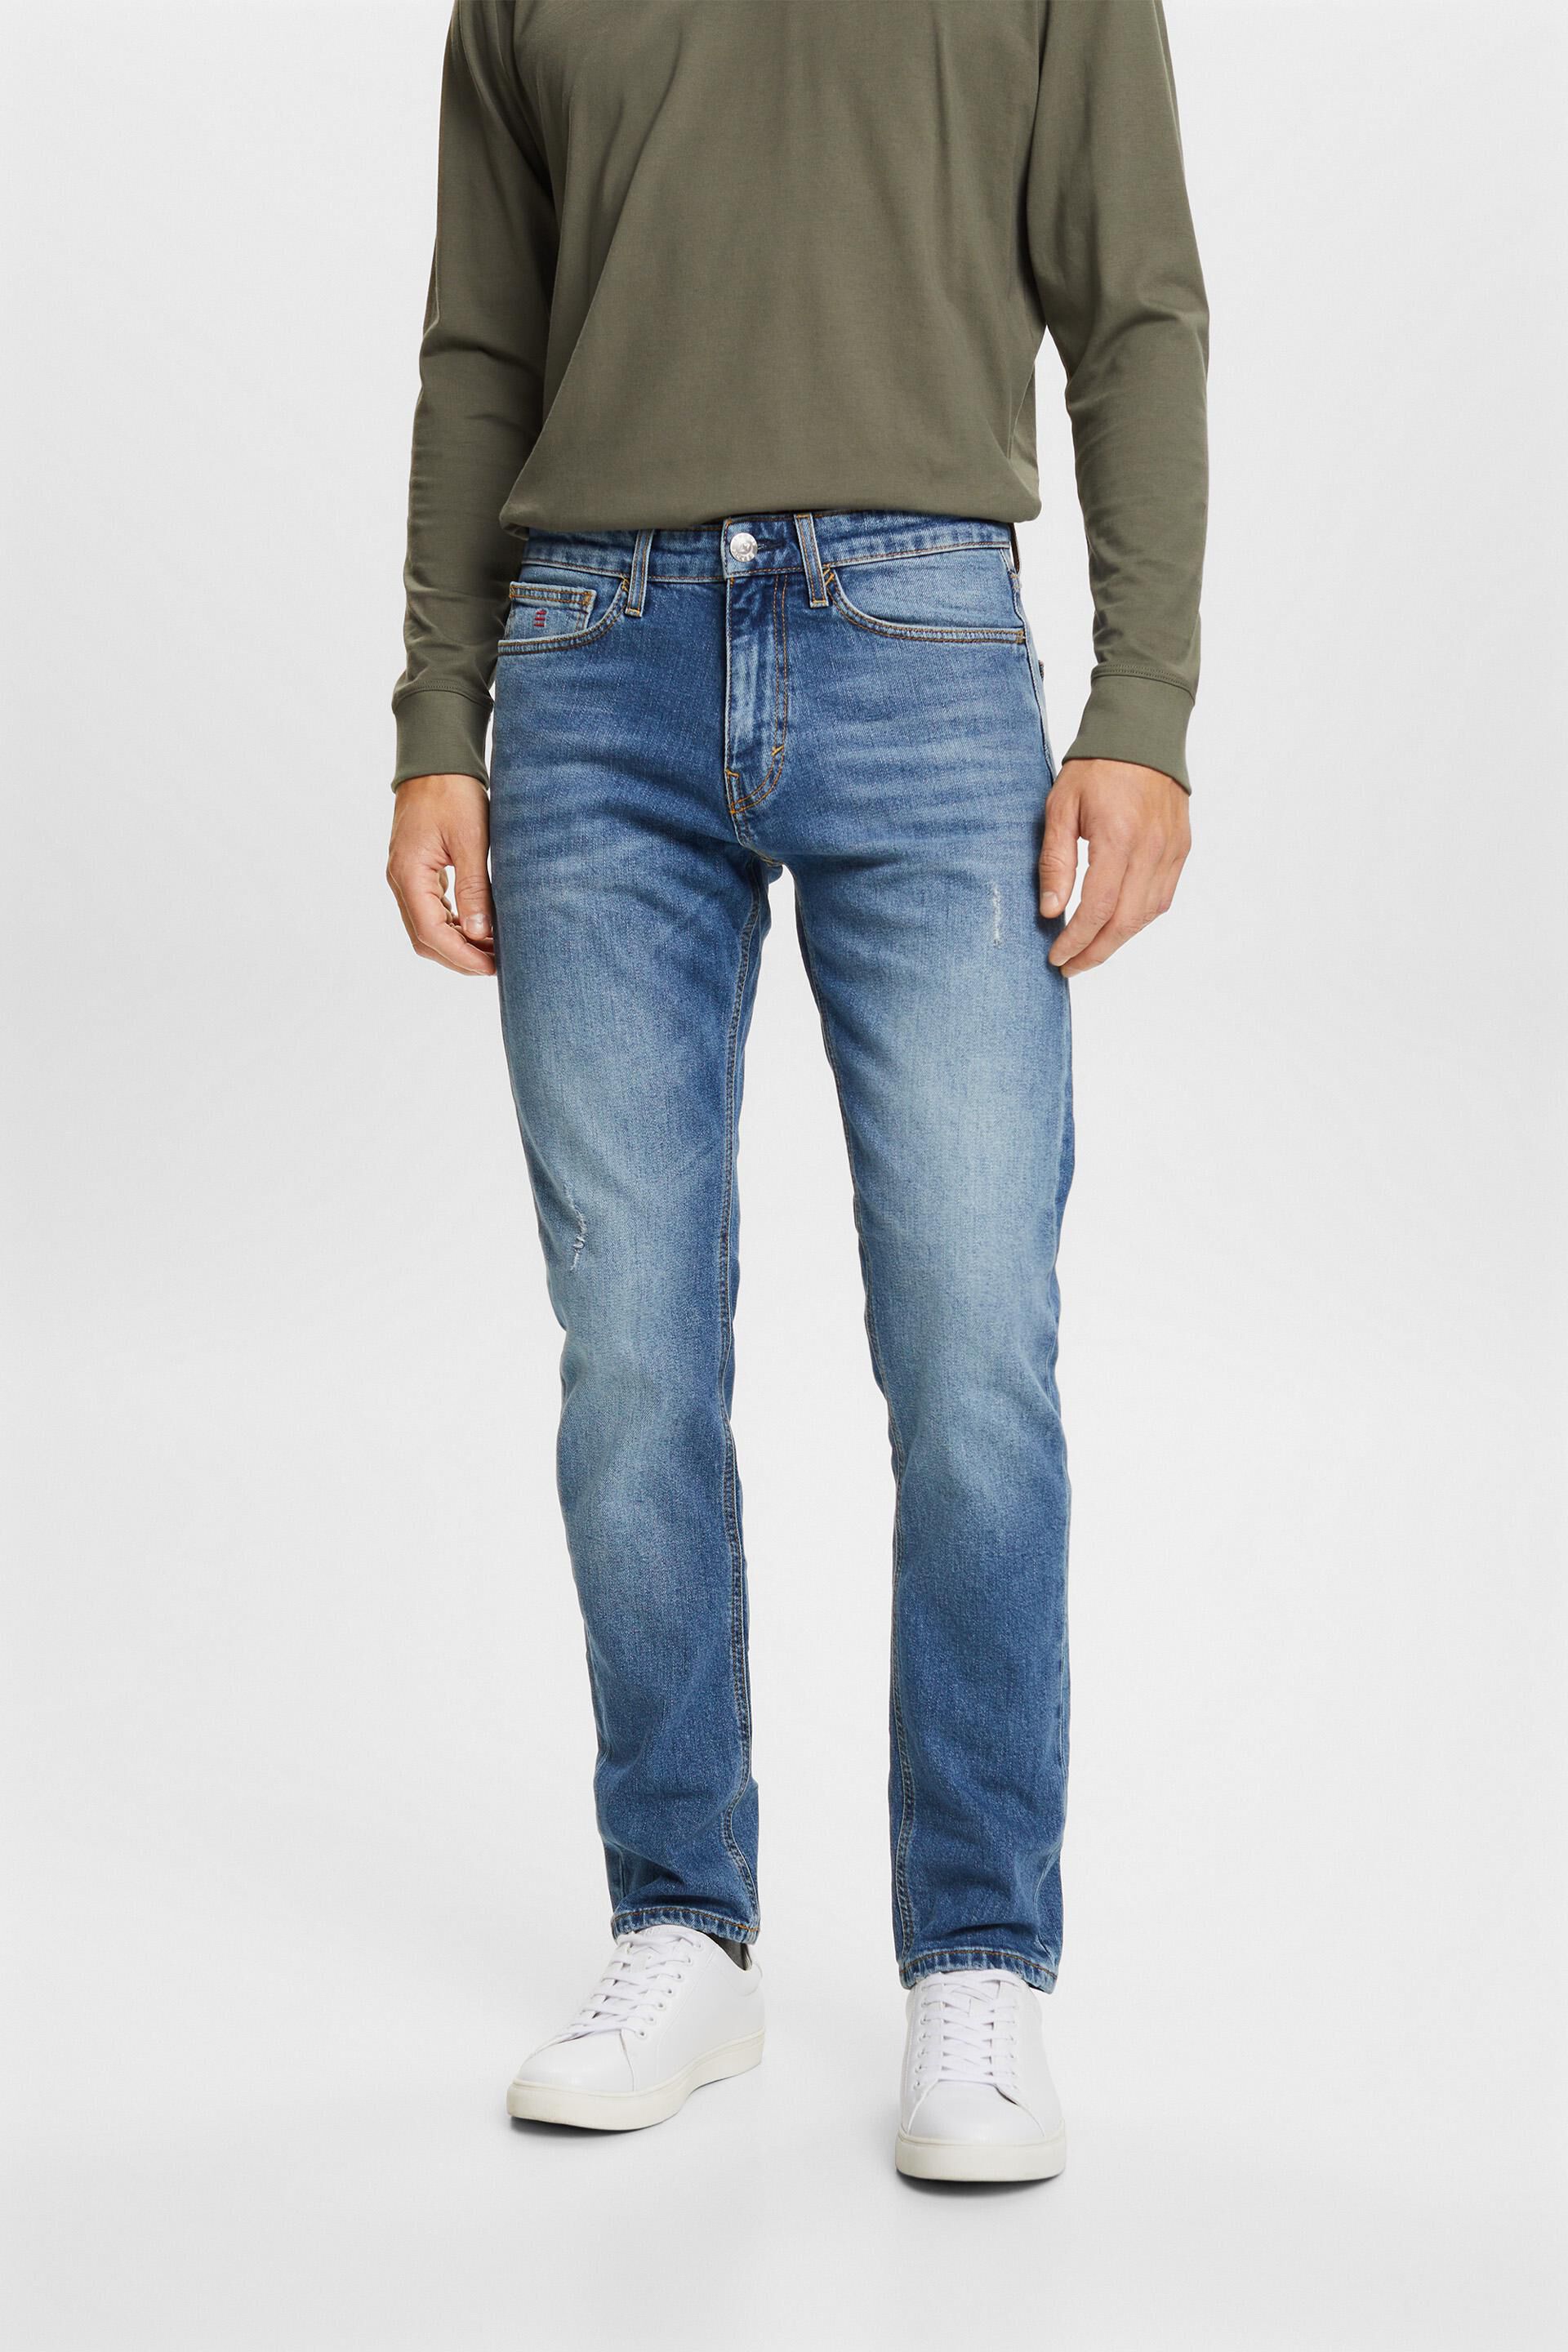 Esprit slim fit Premium stretch jeans